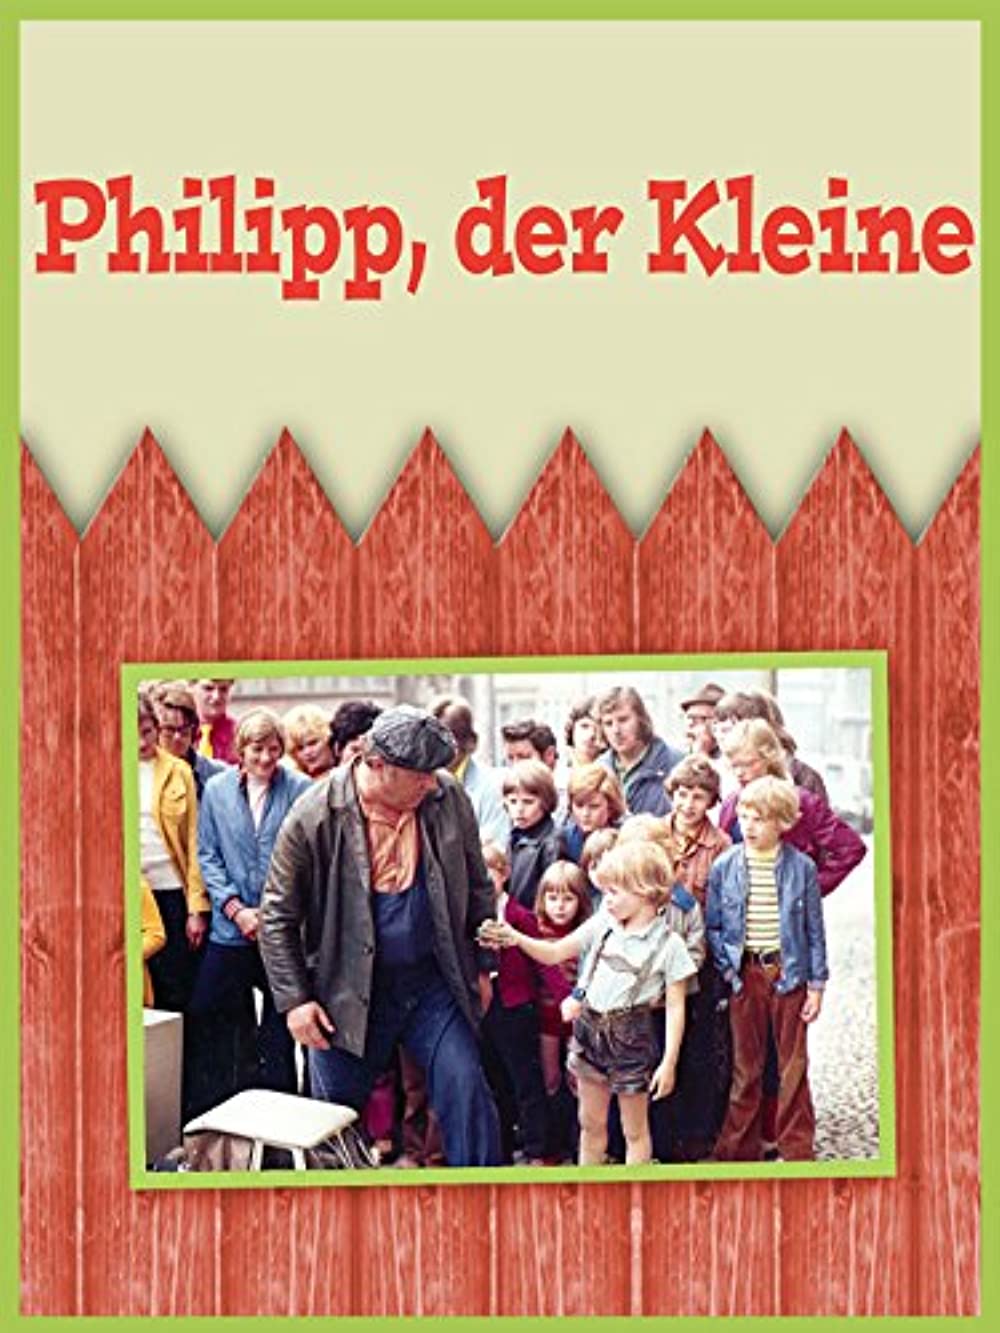 Filmbeschreibung zu Philipp, der Kleine